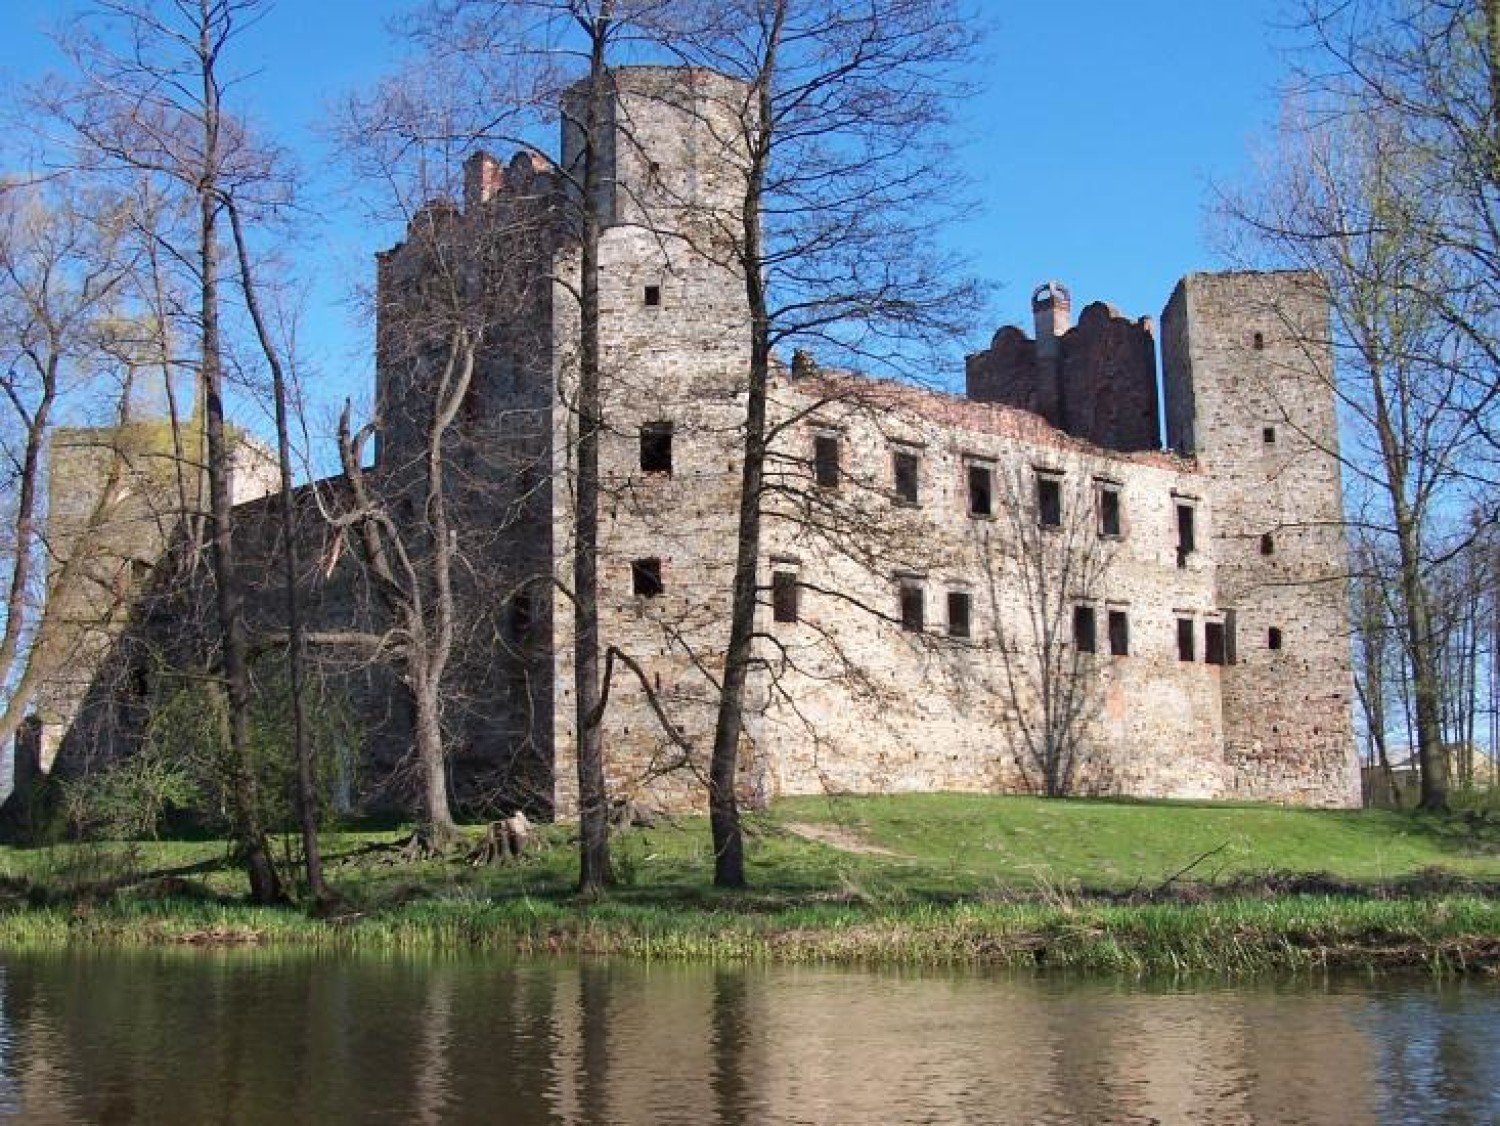 Zamek w Drzewicy zostanie odrestaurowany. W sobotę dzień otwarty, zamek  będzie można zwiedzać | Tomaszów Mazowiecki Nasze Miasto